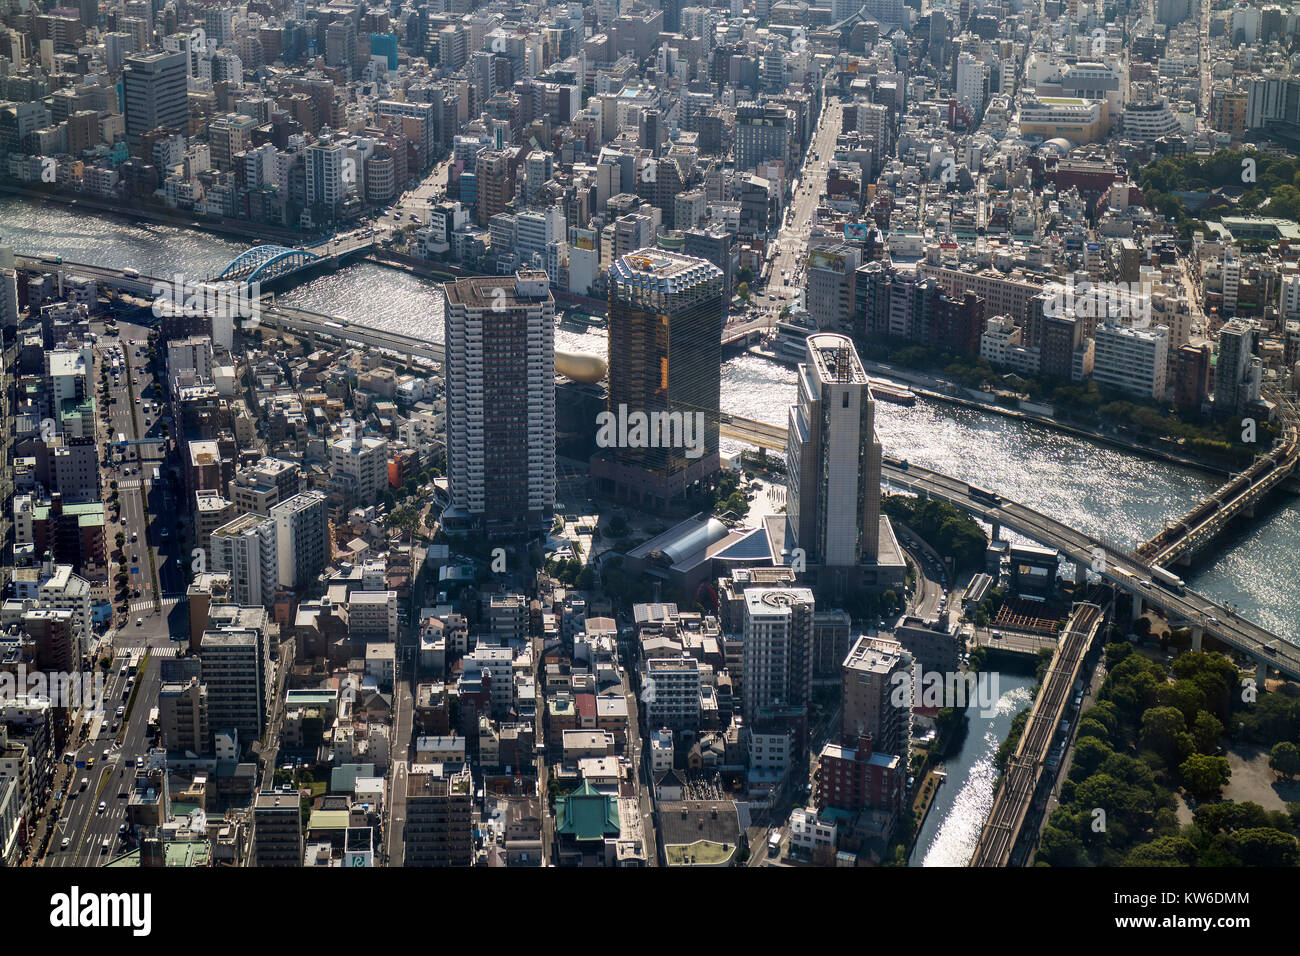 Tokyo - Giappone, 19 Giugno 2017: vista aerea di Tokyo e la birra Asahi torre presso la riva orientale del fiume Sumida in Sumida, Tokyo Foto Stock